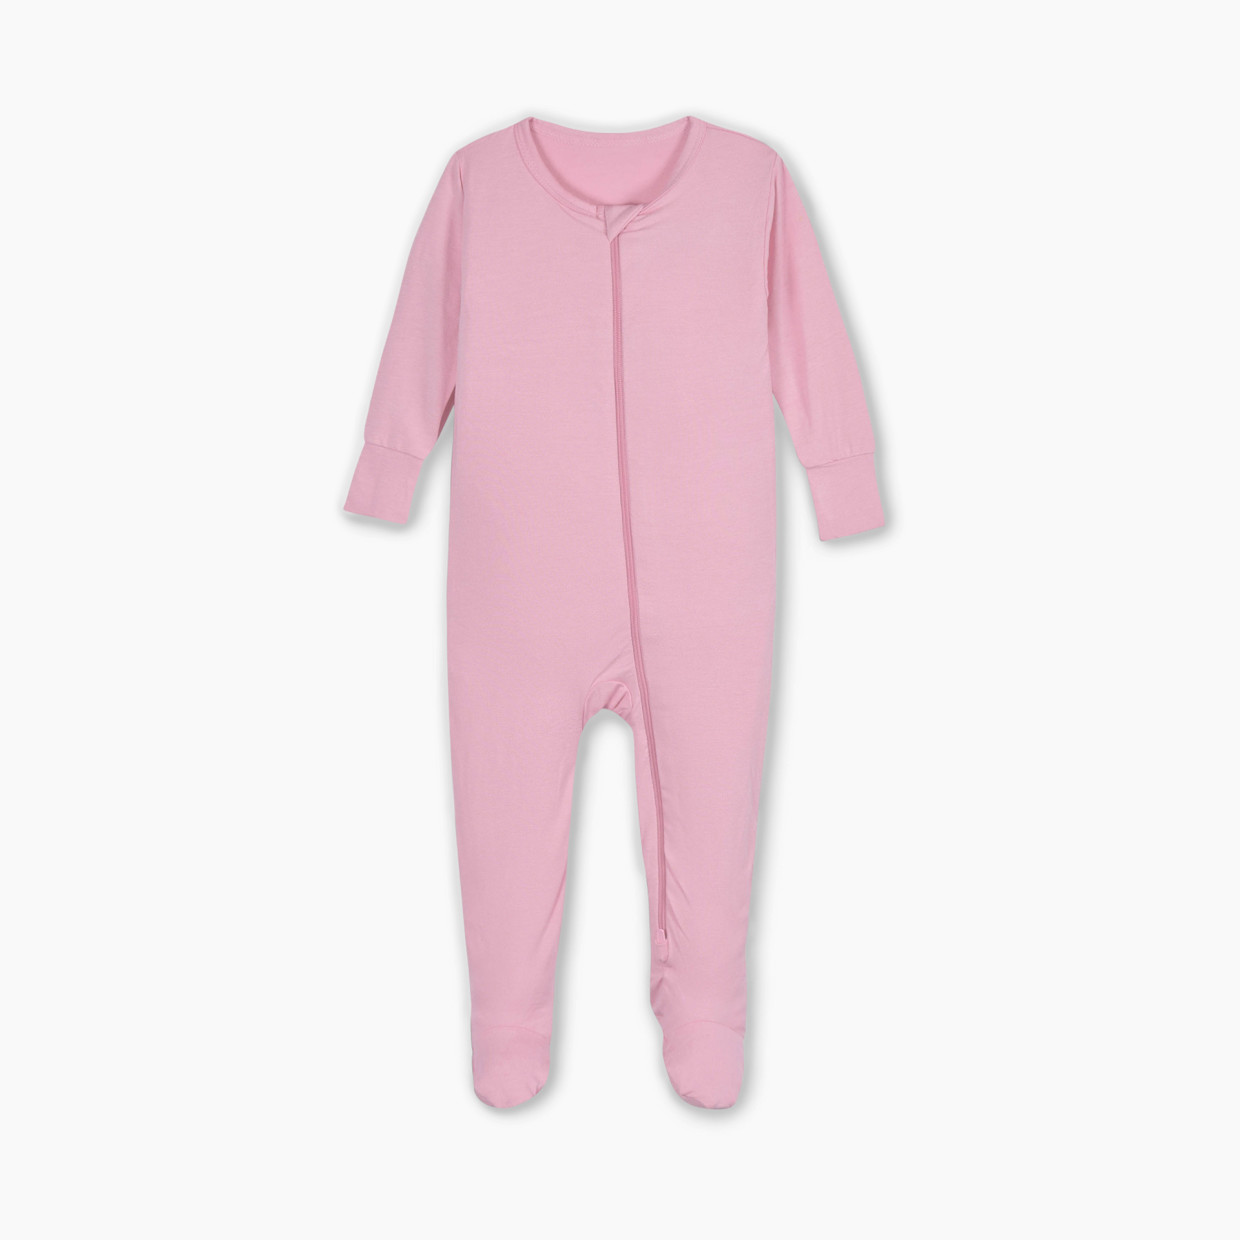 Gerber 2-Way Zip Snug Fit Footed Pajamas - Pink Lemonade, 0-3 M